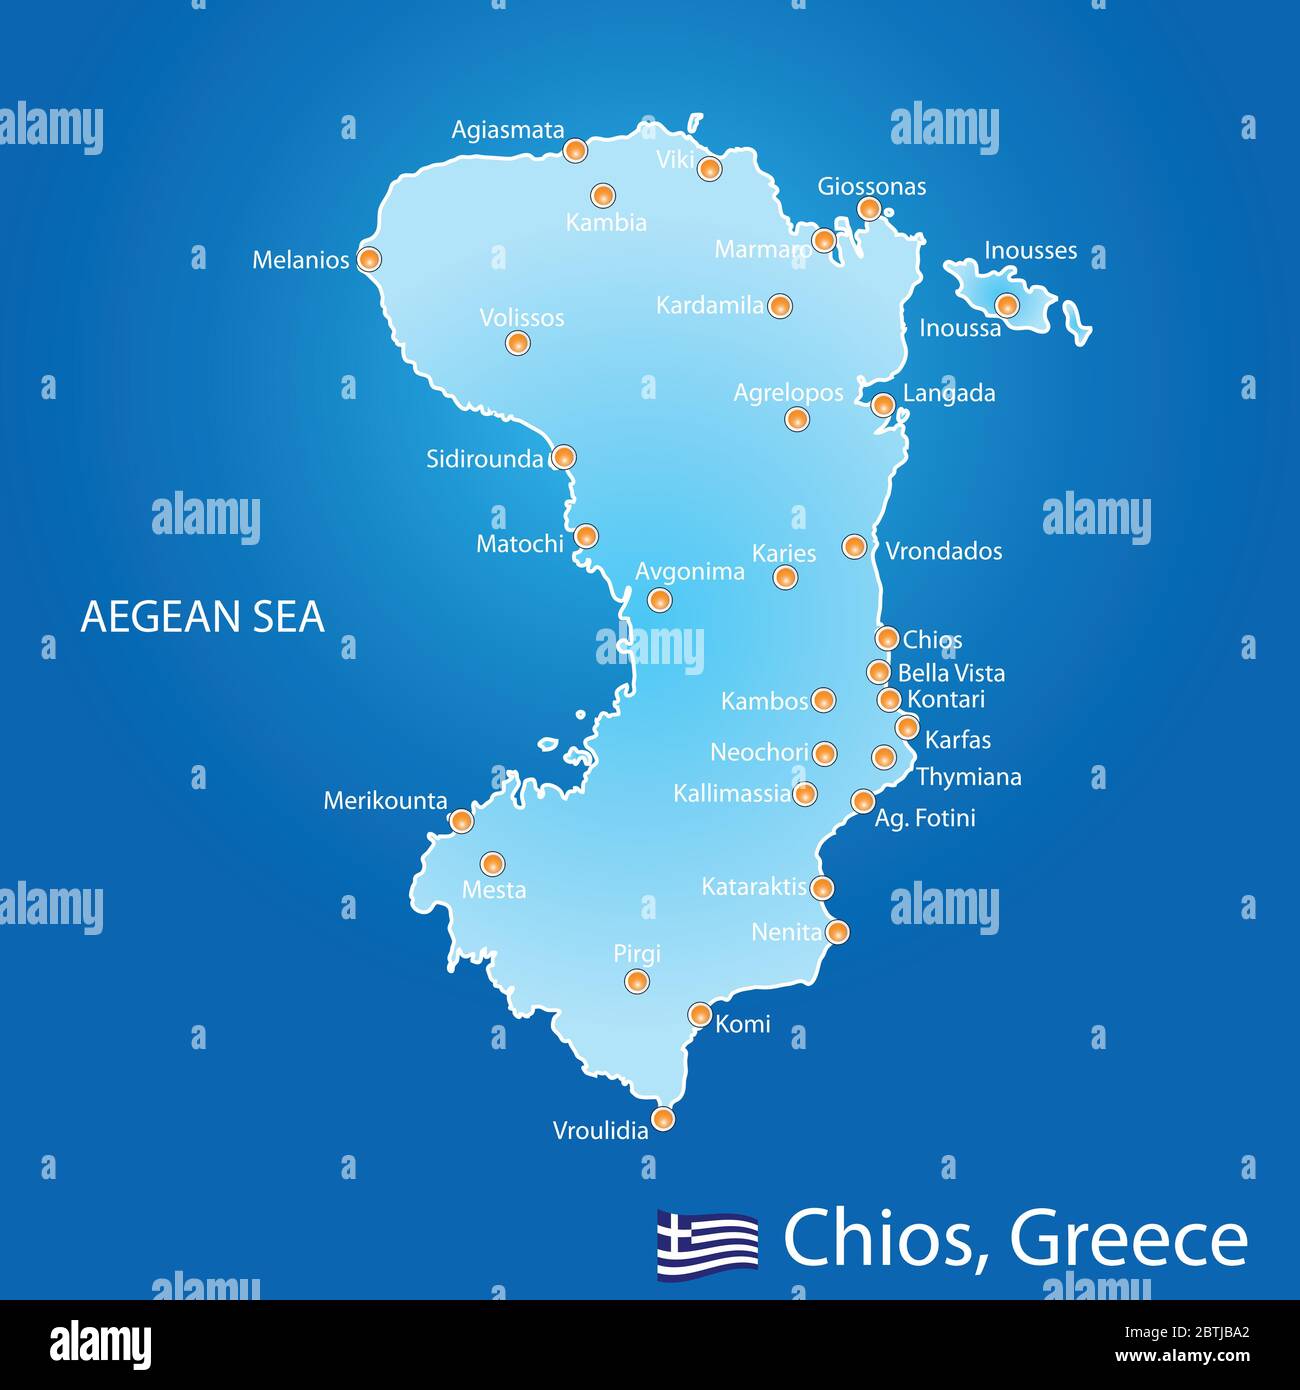 Insel Chios in Griechenland Karte auf blauem Hintergrund Stock Vektor